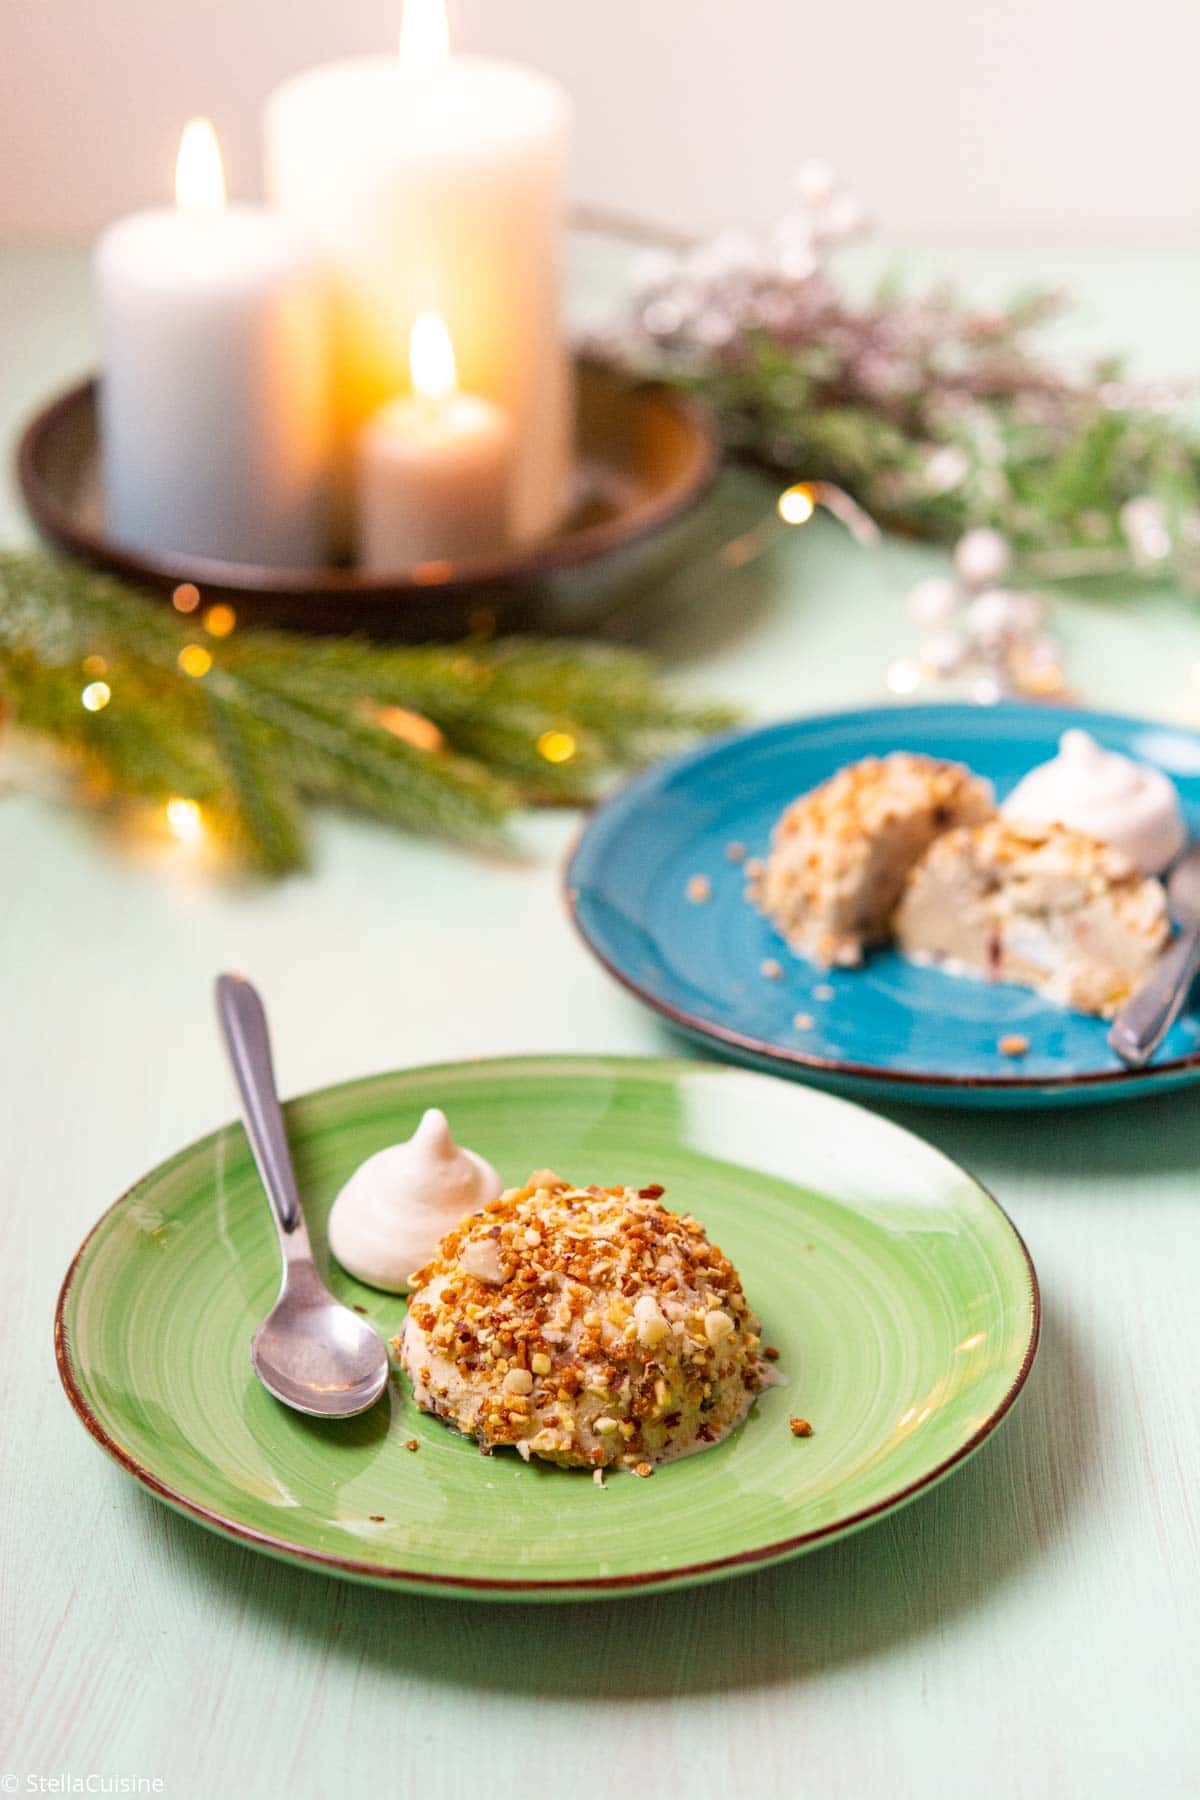 Recette de Noël végétarien : Glaces "Mystère" au Kirsch. Recette facile de crème glacée vanille maison, avec du kirsch, des meringues et faire du pralin maison !